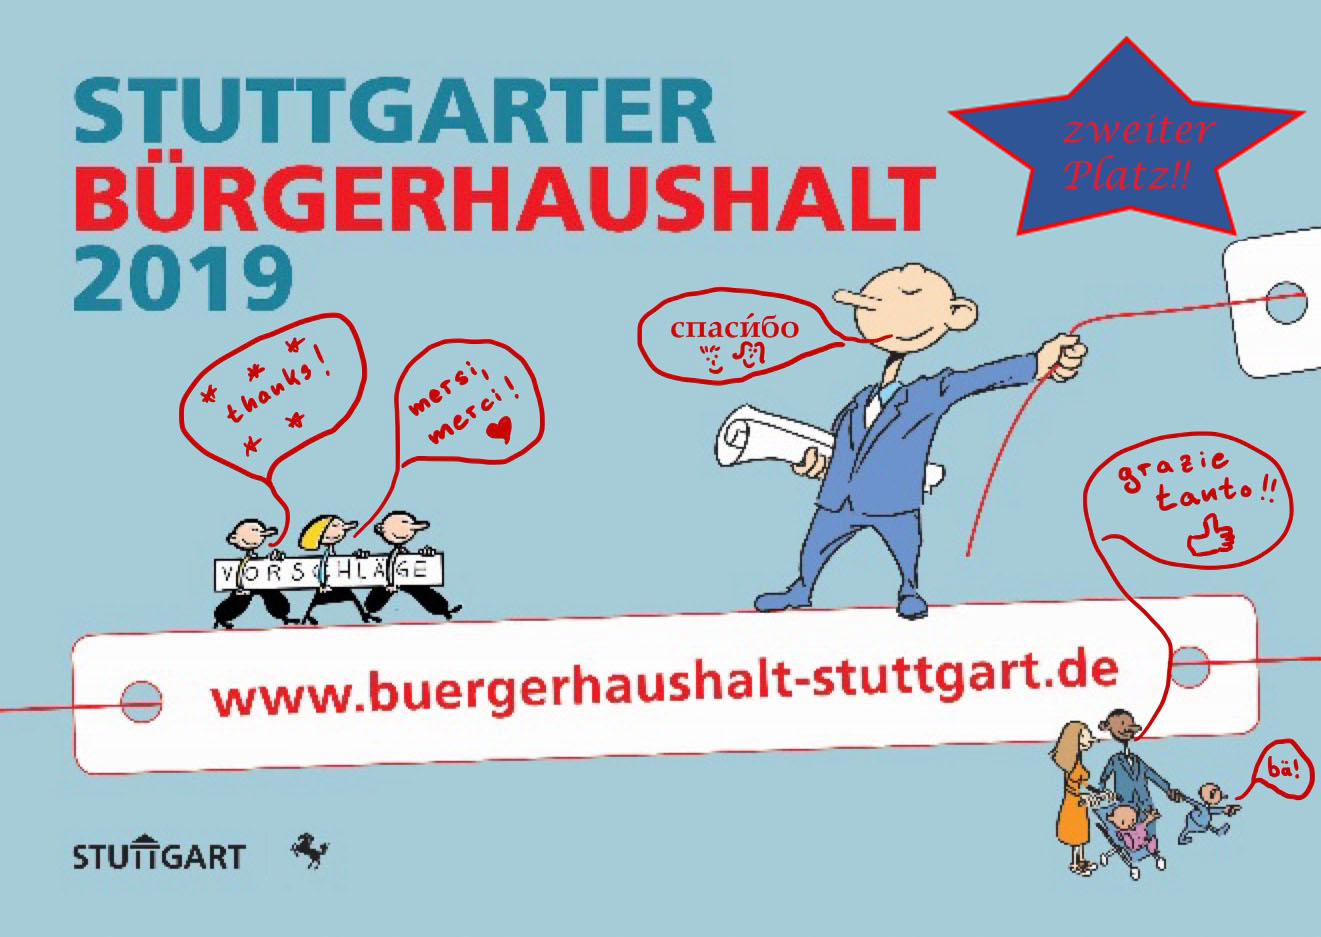 Stuttgarter Bürgerhaushalt 2019